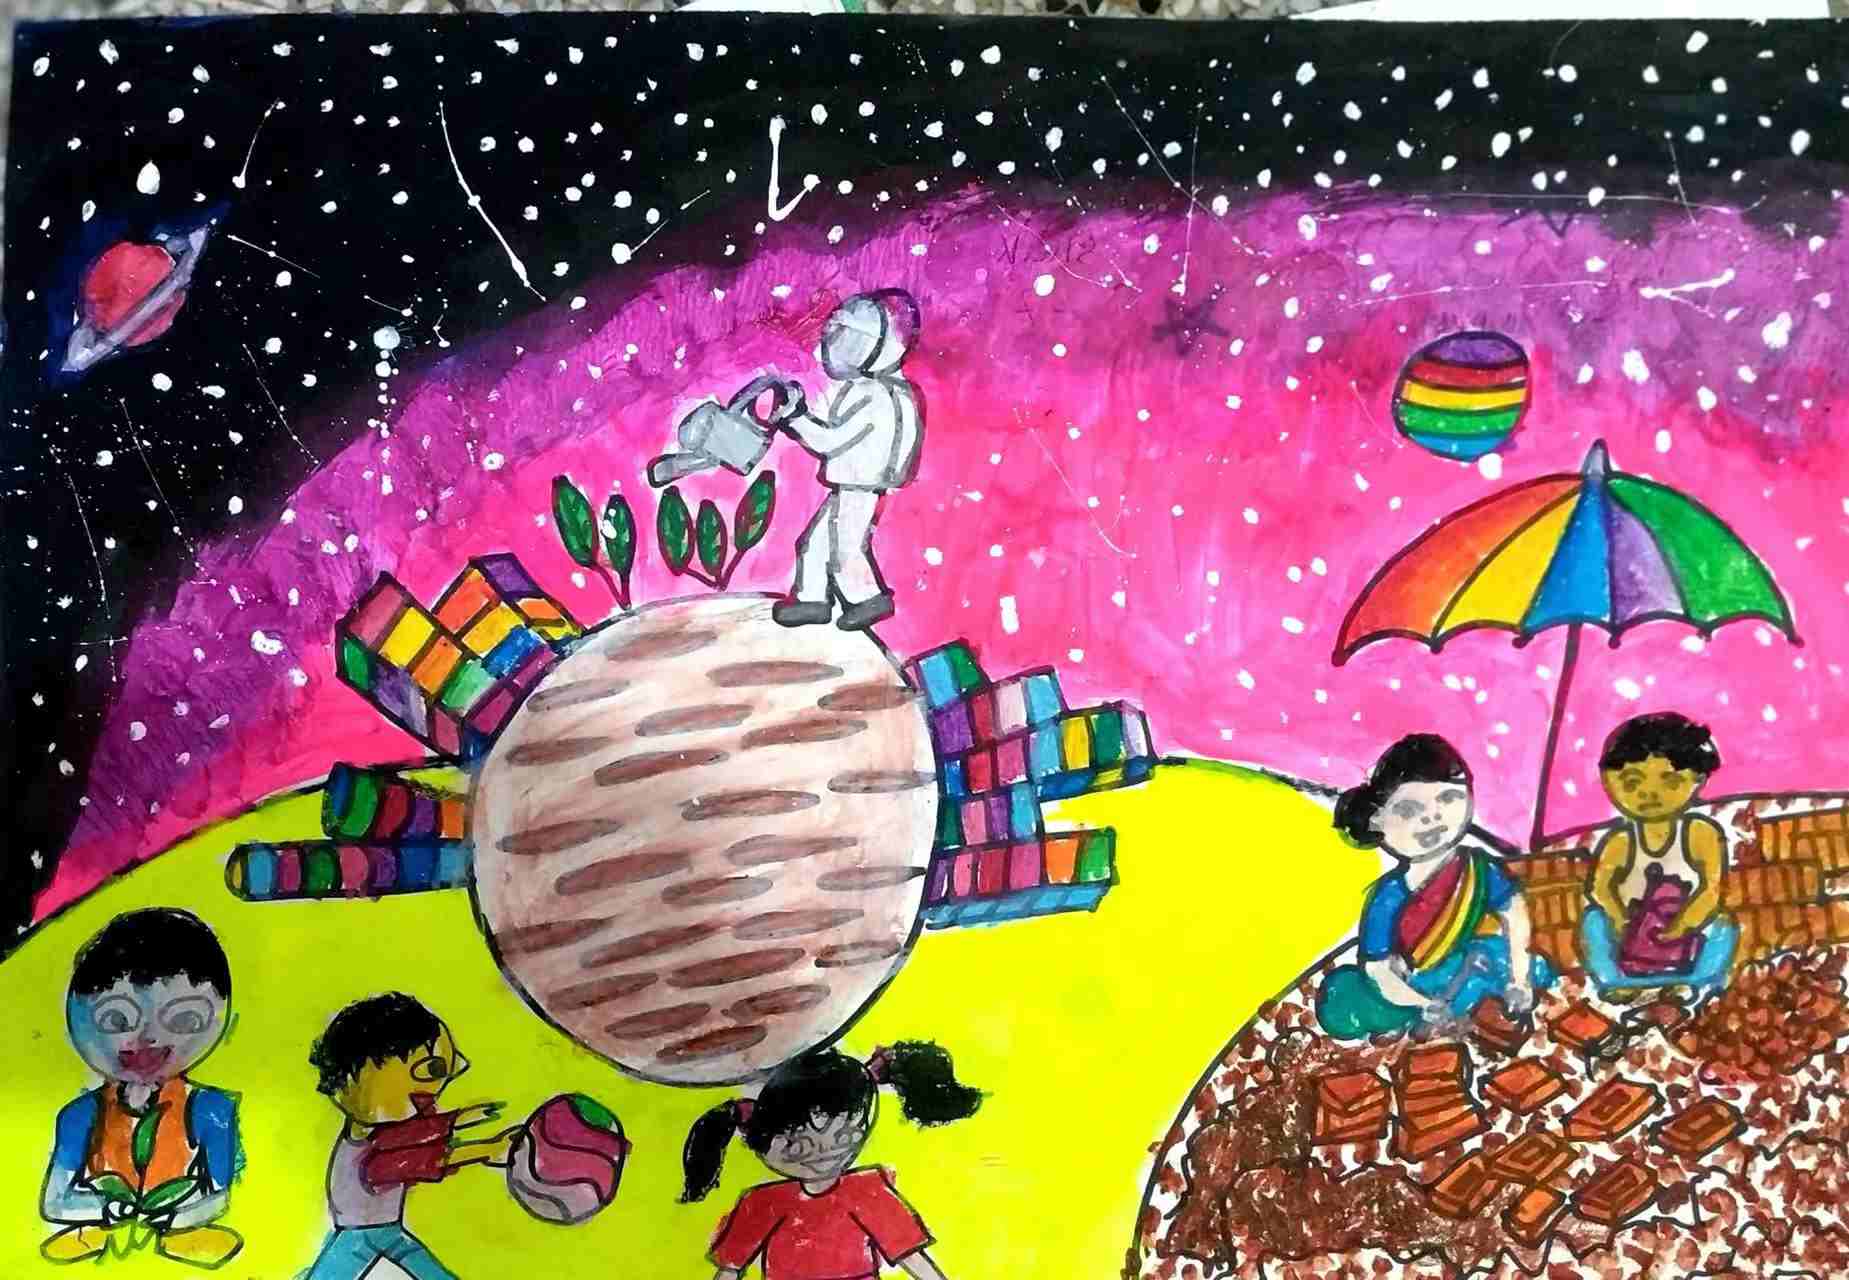 航天日绘画作品《梦天家园》,孟加拉国Shazana Shakeel Ayana